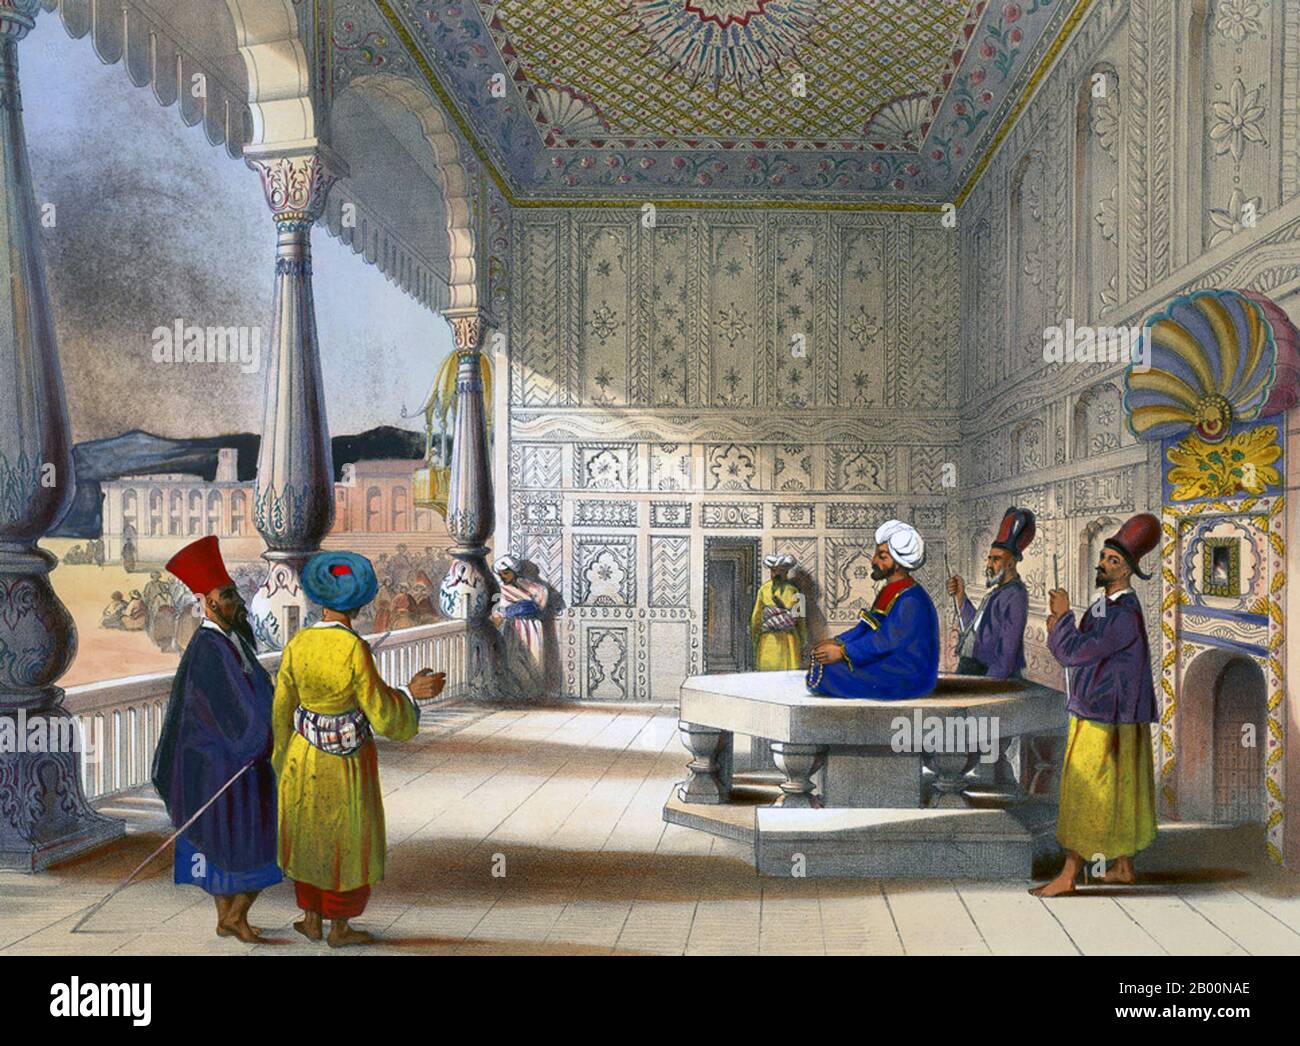 Afganistán: "Interior del Palacio de Shauh Shujah Ool Moolk, el difunto Rey del Caubul". Placa litográfica 3 de 'Afghouistán' por James Rattray (1818-1854), 1848. Shuja Shah Durrani (también conocido como Shah Shujah, Shoja Shah, Shujah al-Mulk) (c. 4 de noviembre de 1785 – 5 de abril de 1842) fue gobernante del Imperio Durrani de 1803 a 1809. Luego gobernó desde 1839 hasta su muerte en 1842. Shuja Shah era de la línea Sadozai del grupo Abdali de pashtunes. Se convirtió en el quinto Emir de Afganistán. Foto de stock